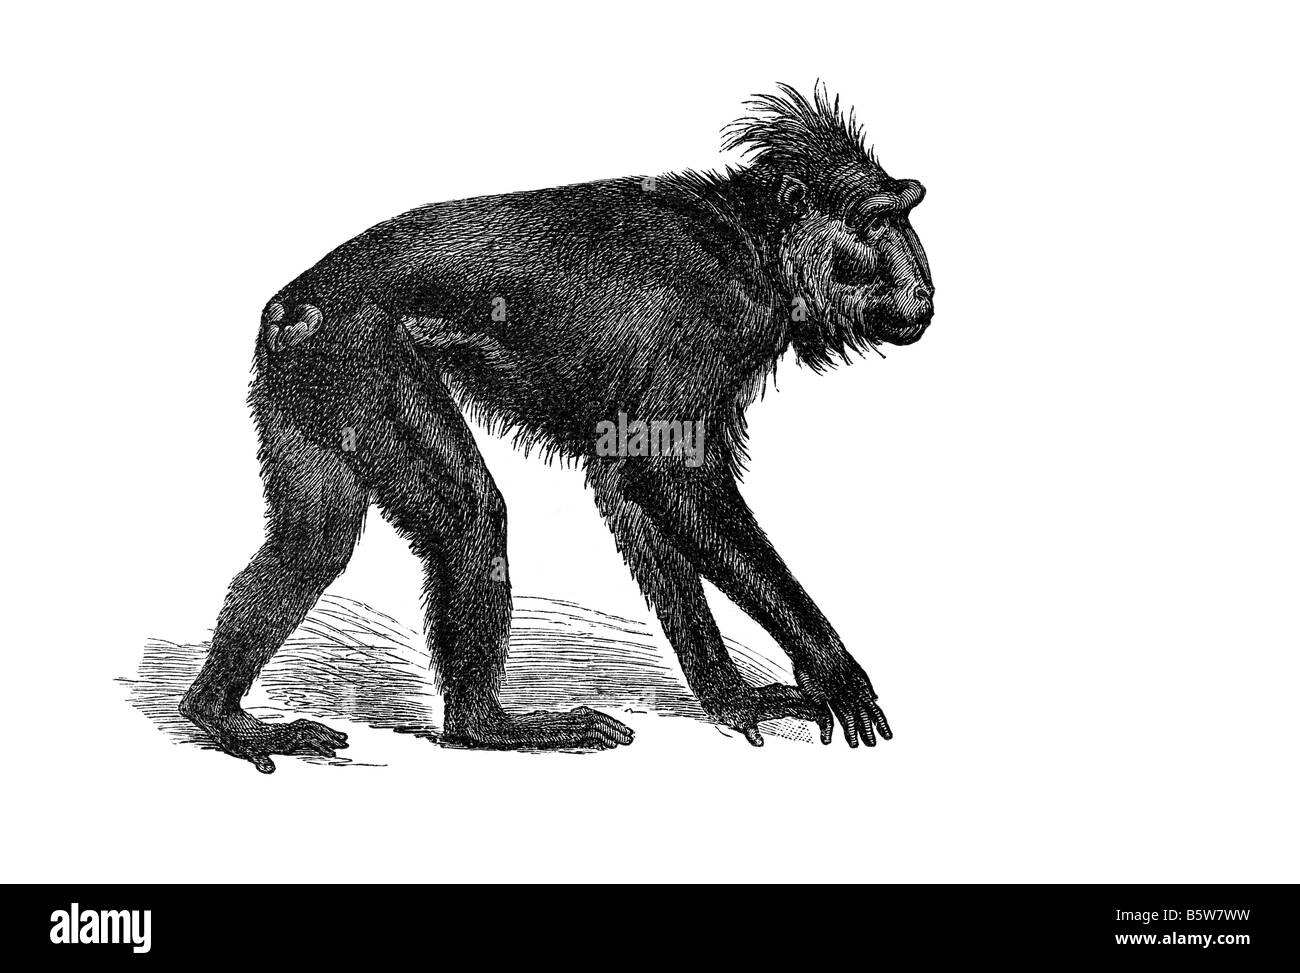 L'Ancien Monde babouins Papio sous-famille Cercopithecinae genre marcher singe, singe vervet asiatique Banque D'Images